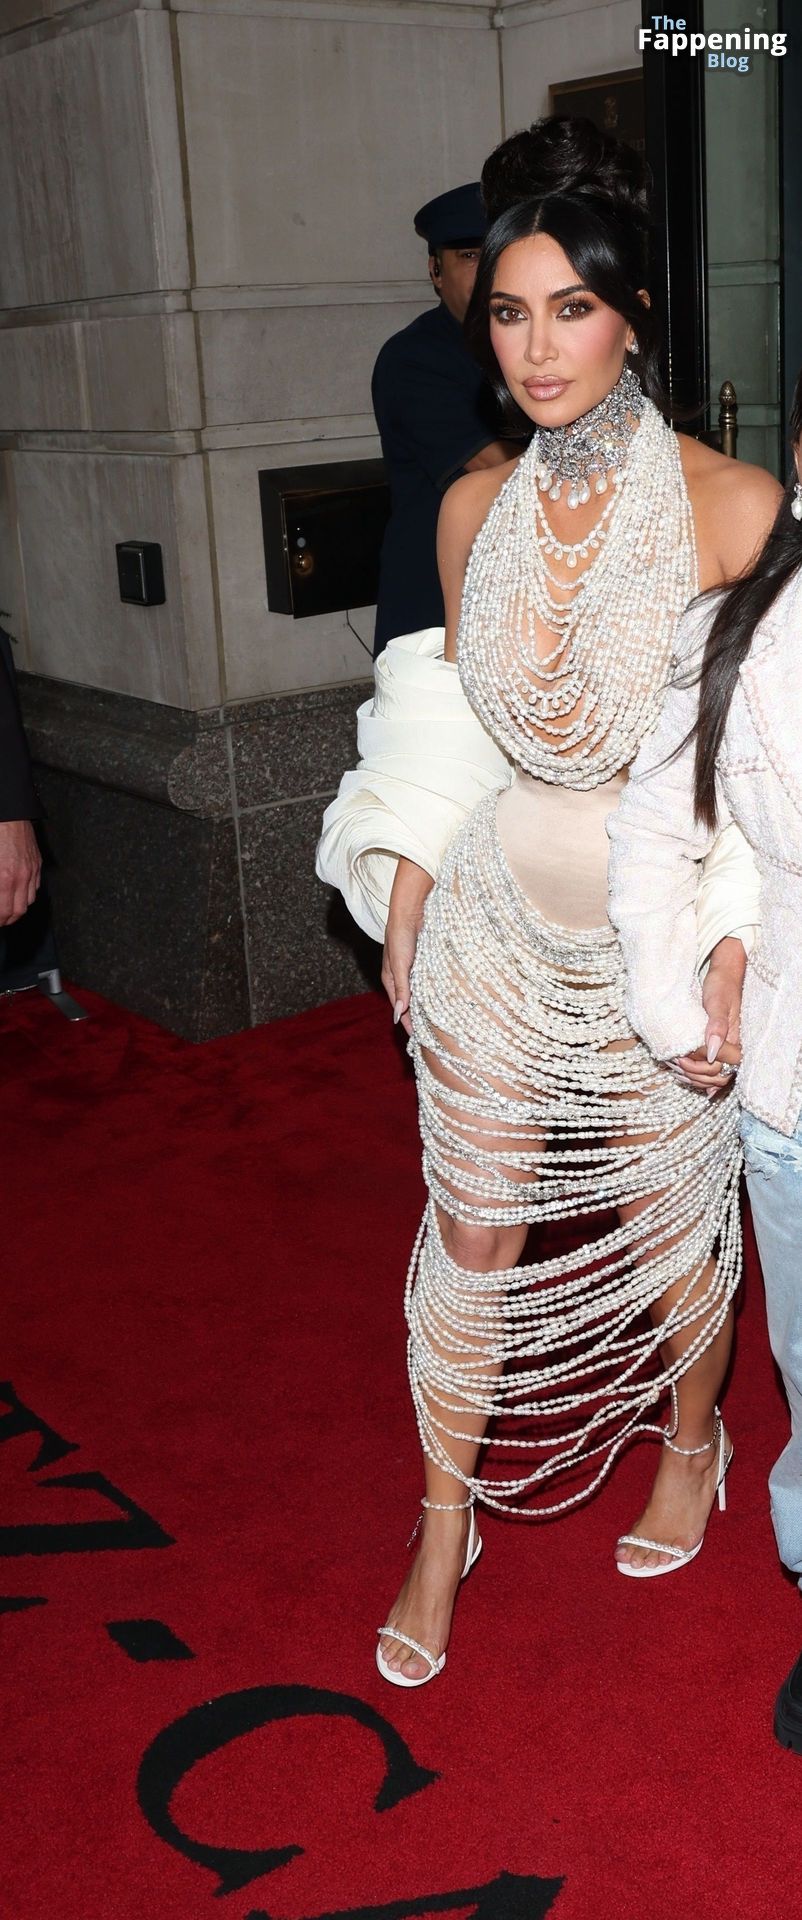 Kim-Kardashian-Sexy-The-Fappening-Blog-139.jpg